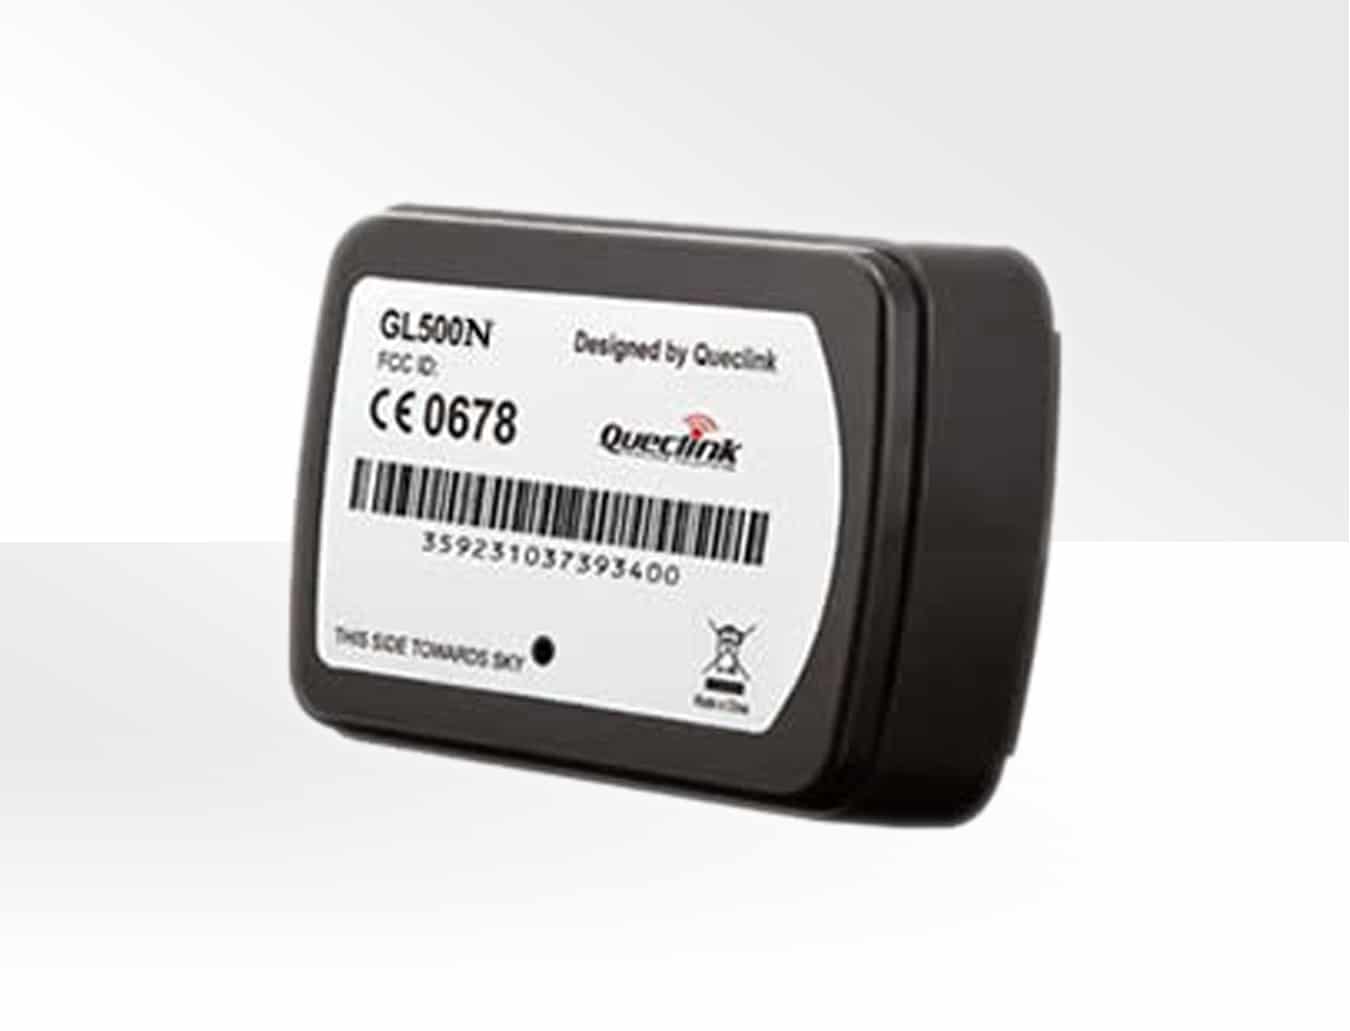 Queclink GL500N 4G LTE asset GPS tracker